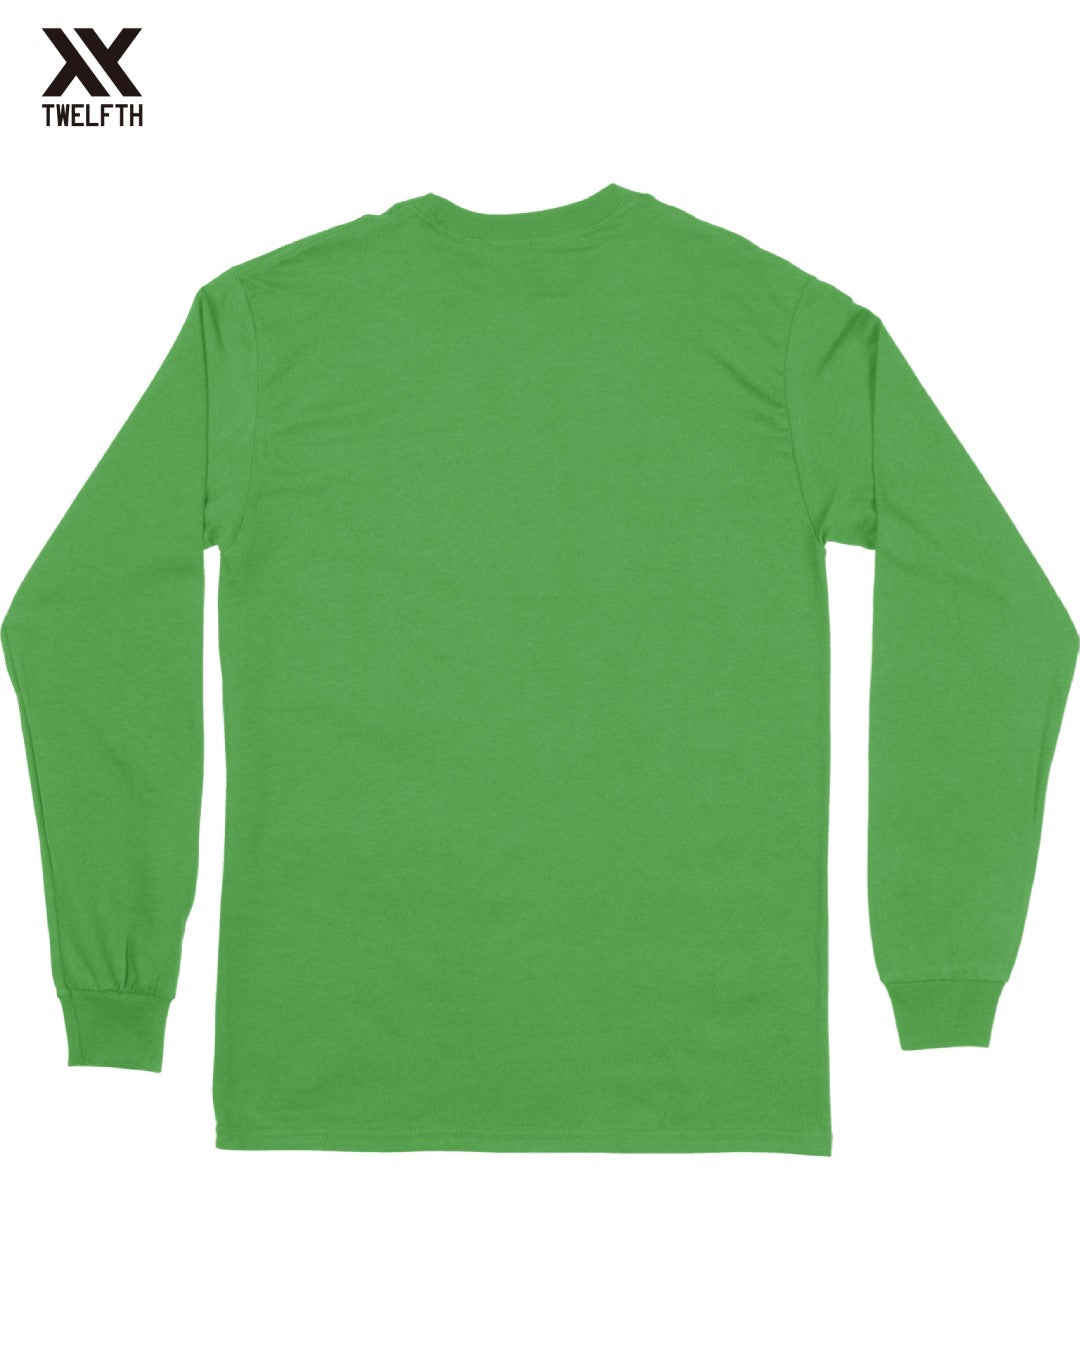 Maccabi Haifa Crest T-Shirt - Mens - Long Sleeve